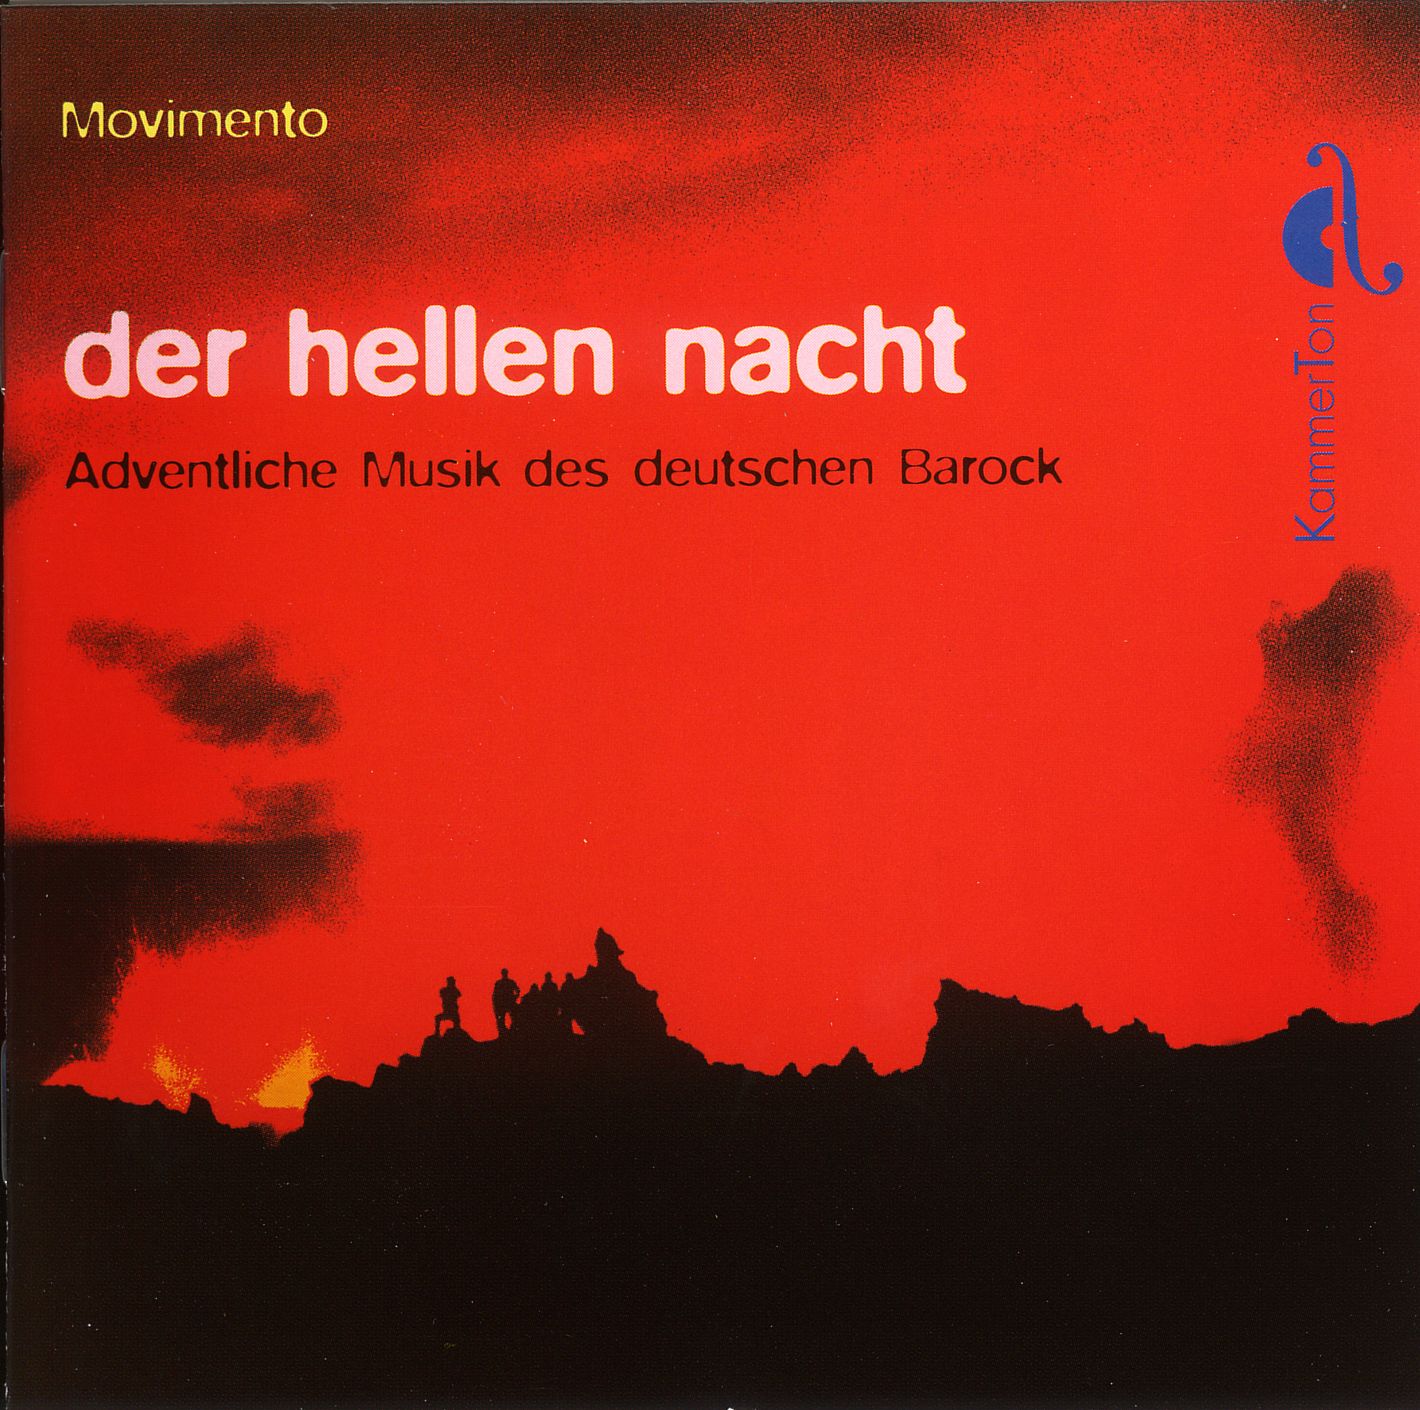 der hellen nacht - Adventliche Musik des deutschen Barock